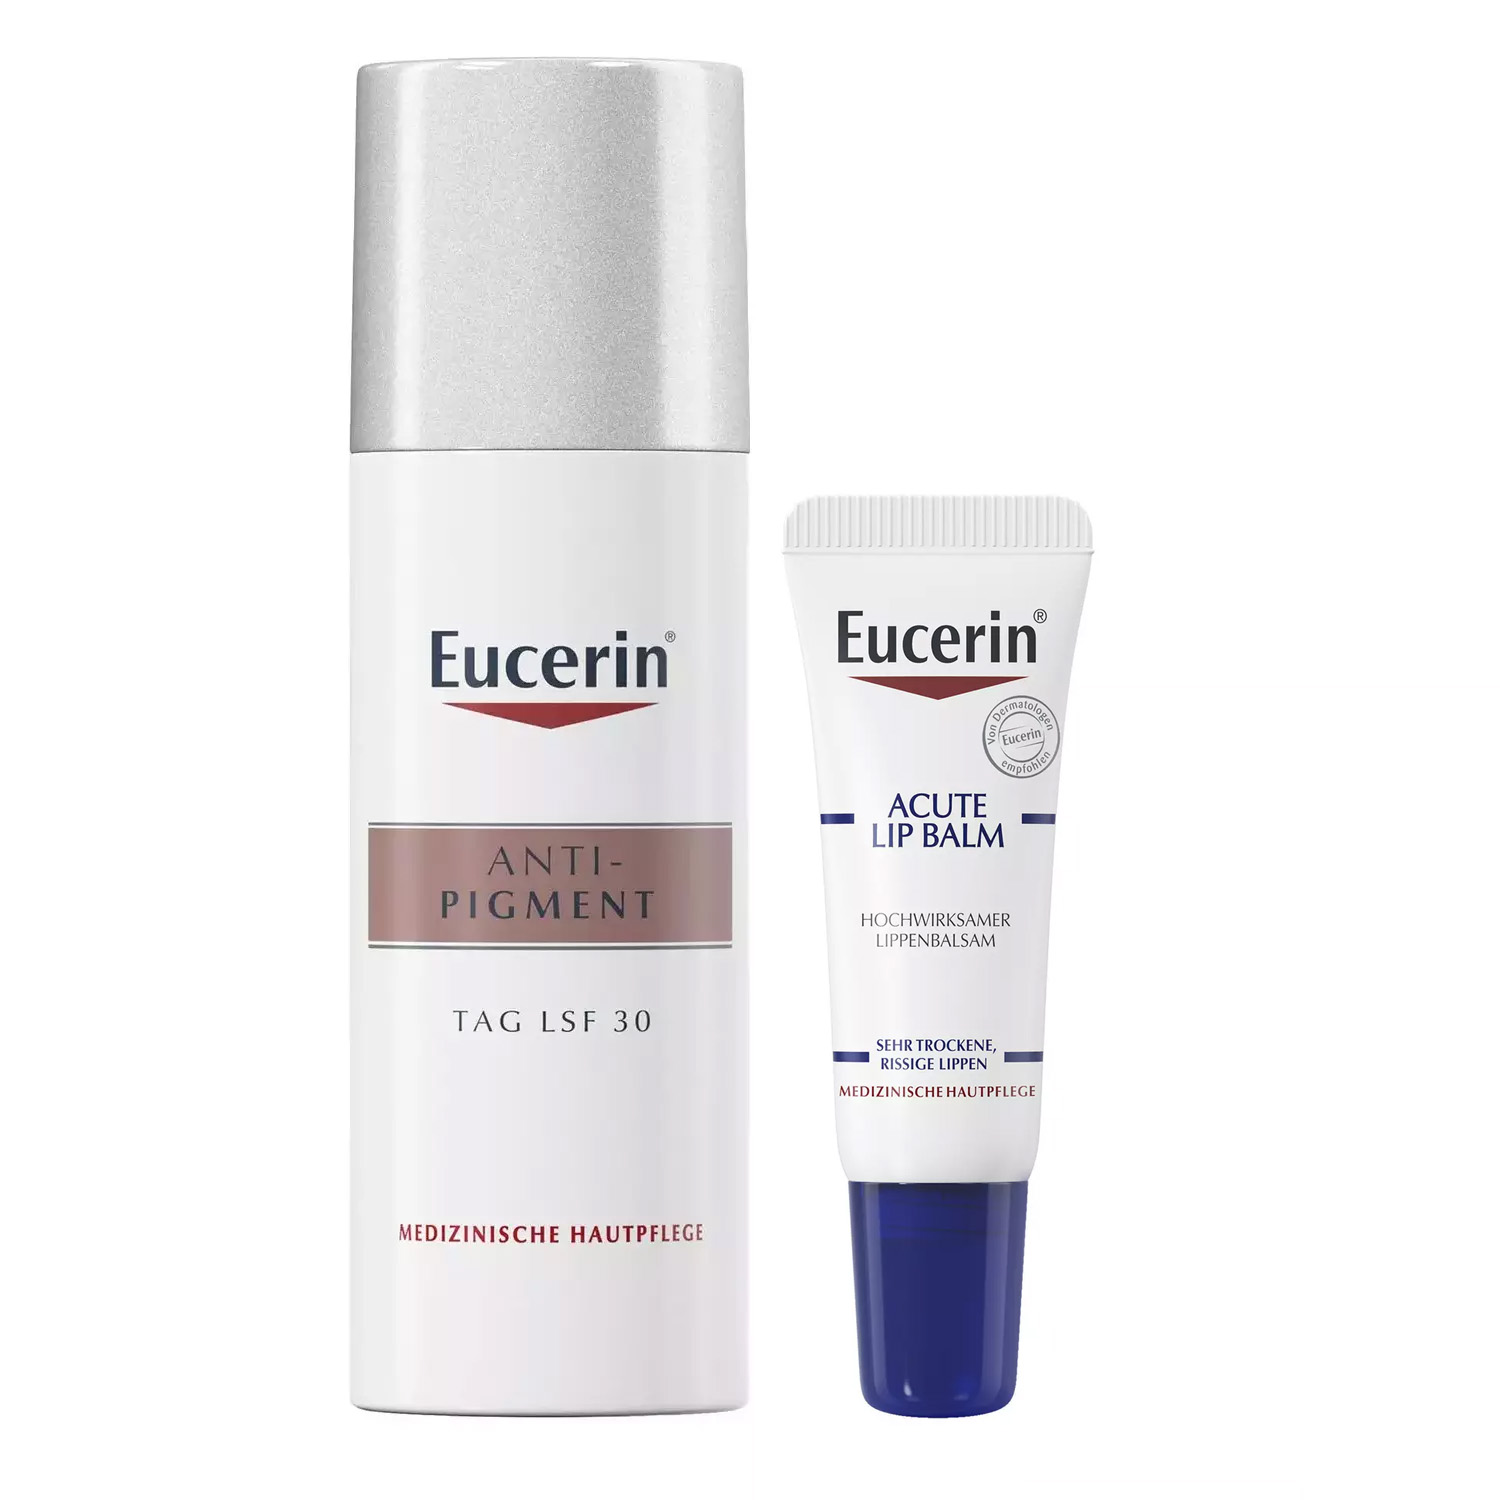 Eucerin Набор для ухода за кожей: бальзам для губ, 10 мл + крем дневной SPF30+, 50 мл (Eucerin, Anti-Pigment) дневной крем против пигментации spf 30 eucerin anti pigment 50 мл